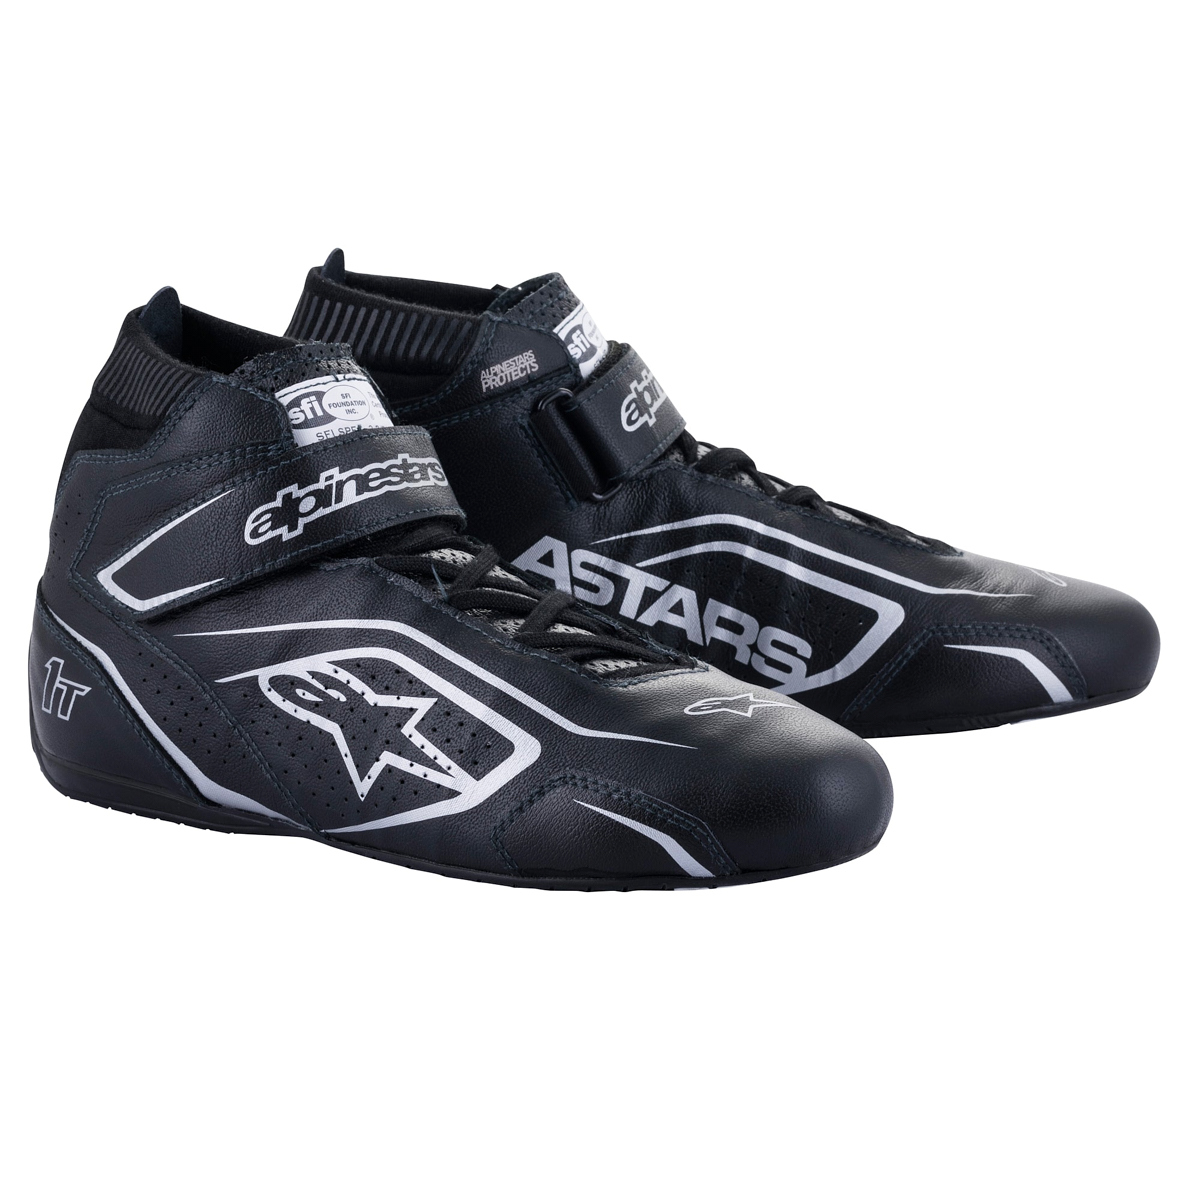 Alpinestars 2710122-119-12 - Shoe Tech-1T V3 Black / Silver Size 12